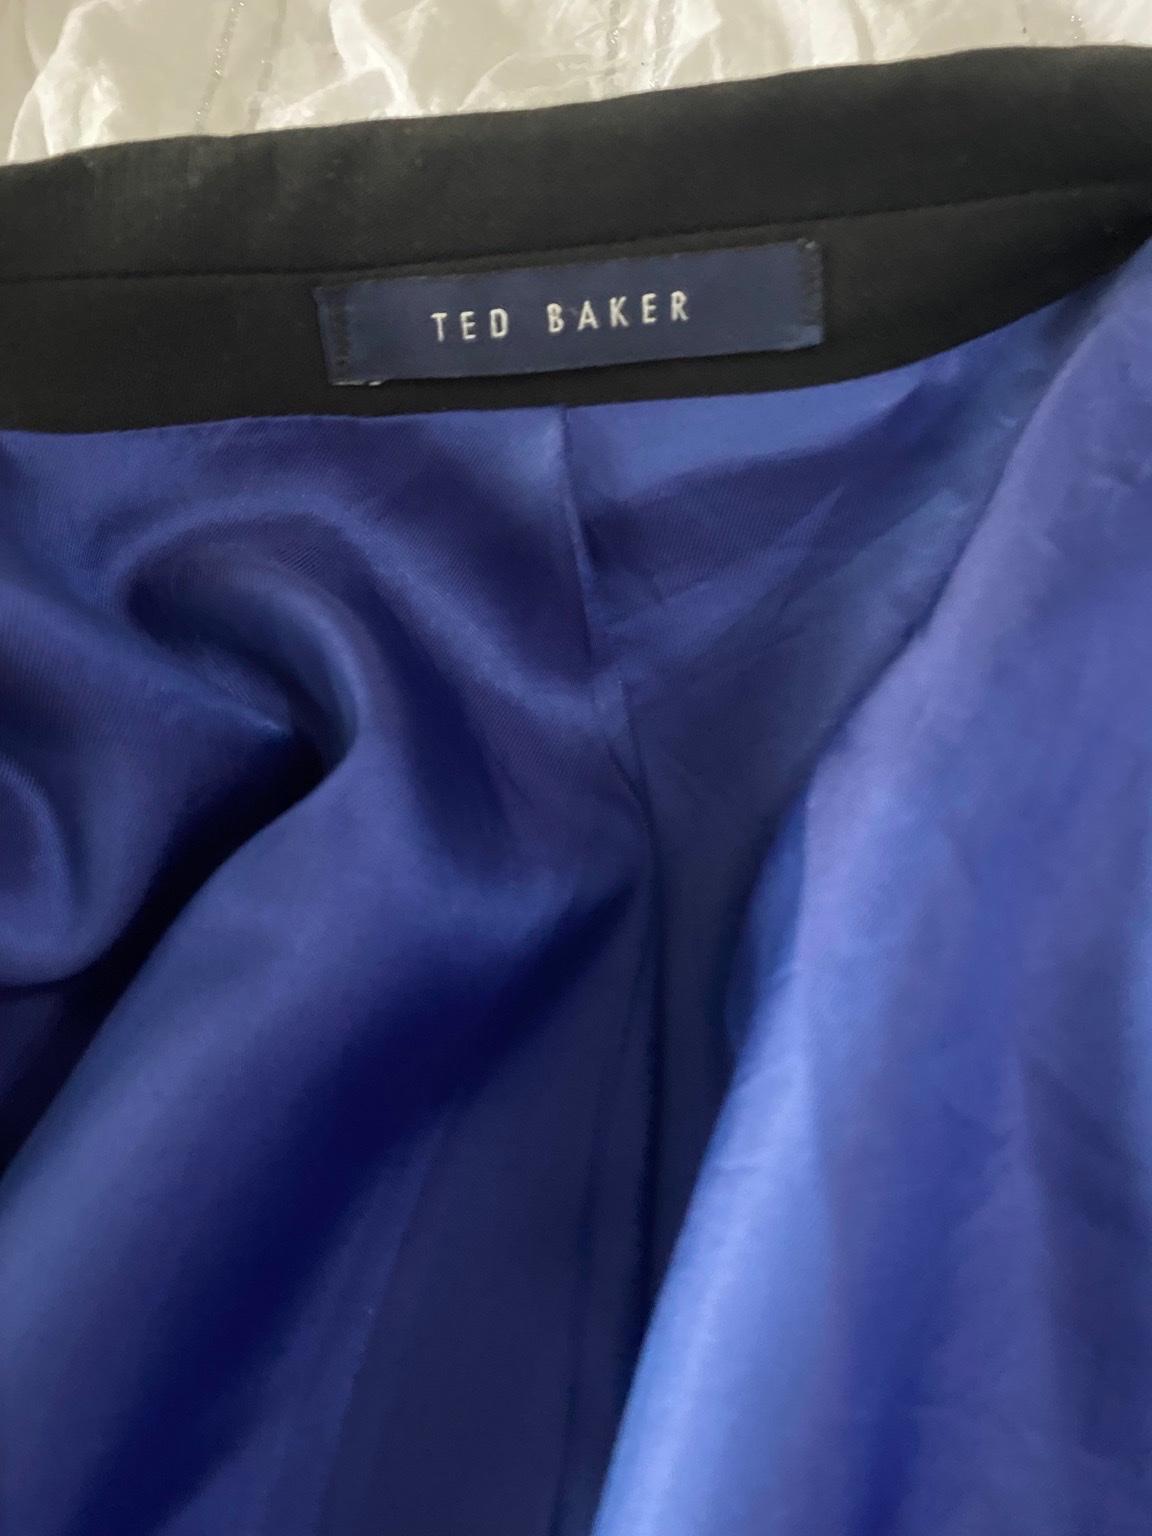 Ted Baker Mens black suit in M9 Manchester für £ 25,00 zum Verkauf ...